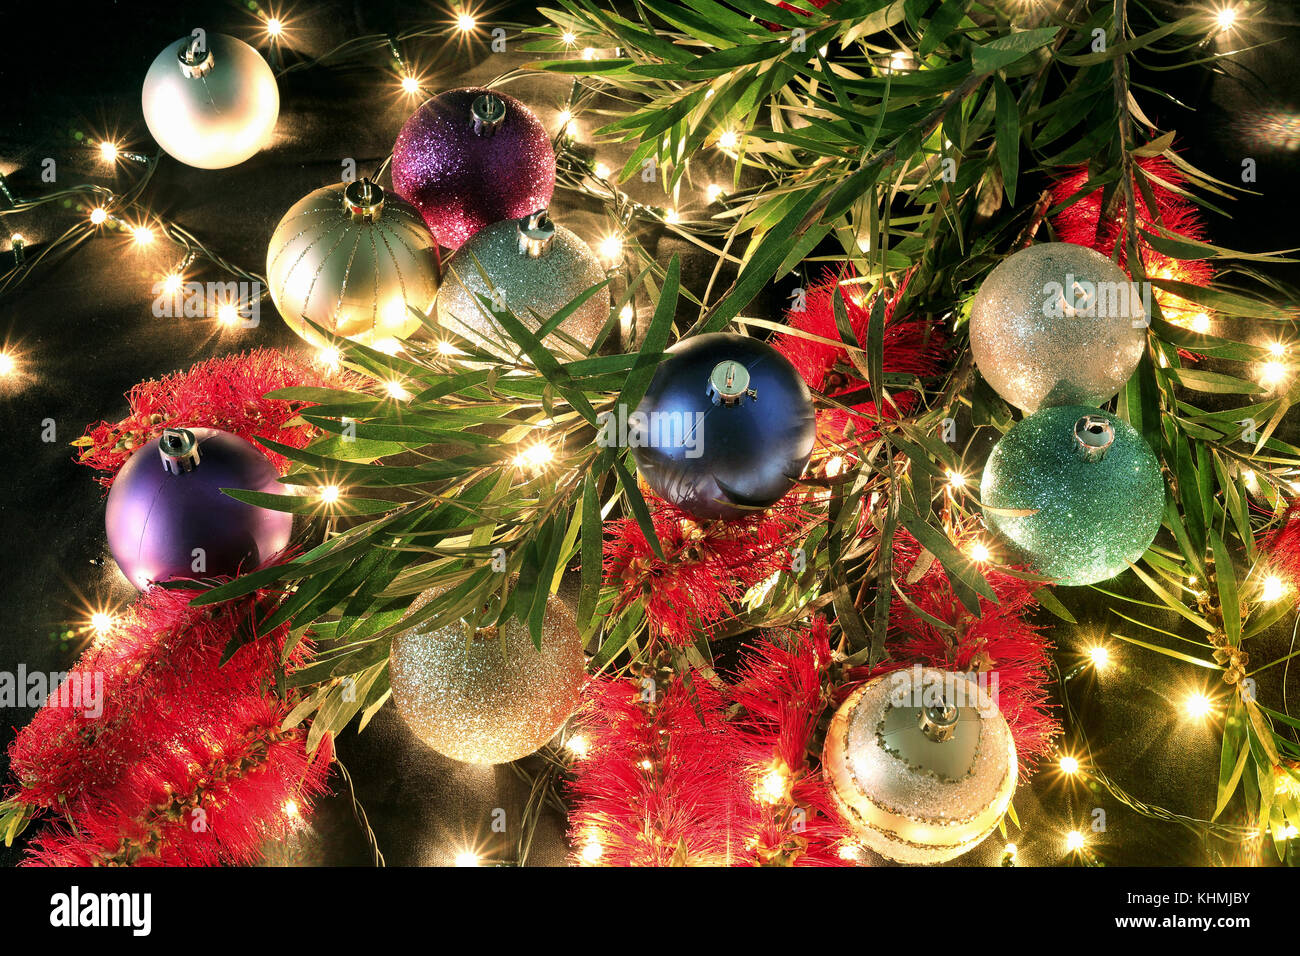 Christmas Baubles and Bottlebrush on Black Background Stock Photo